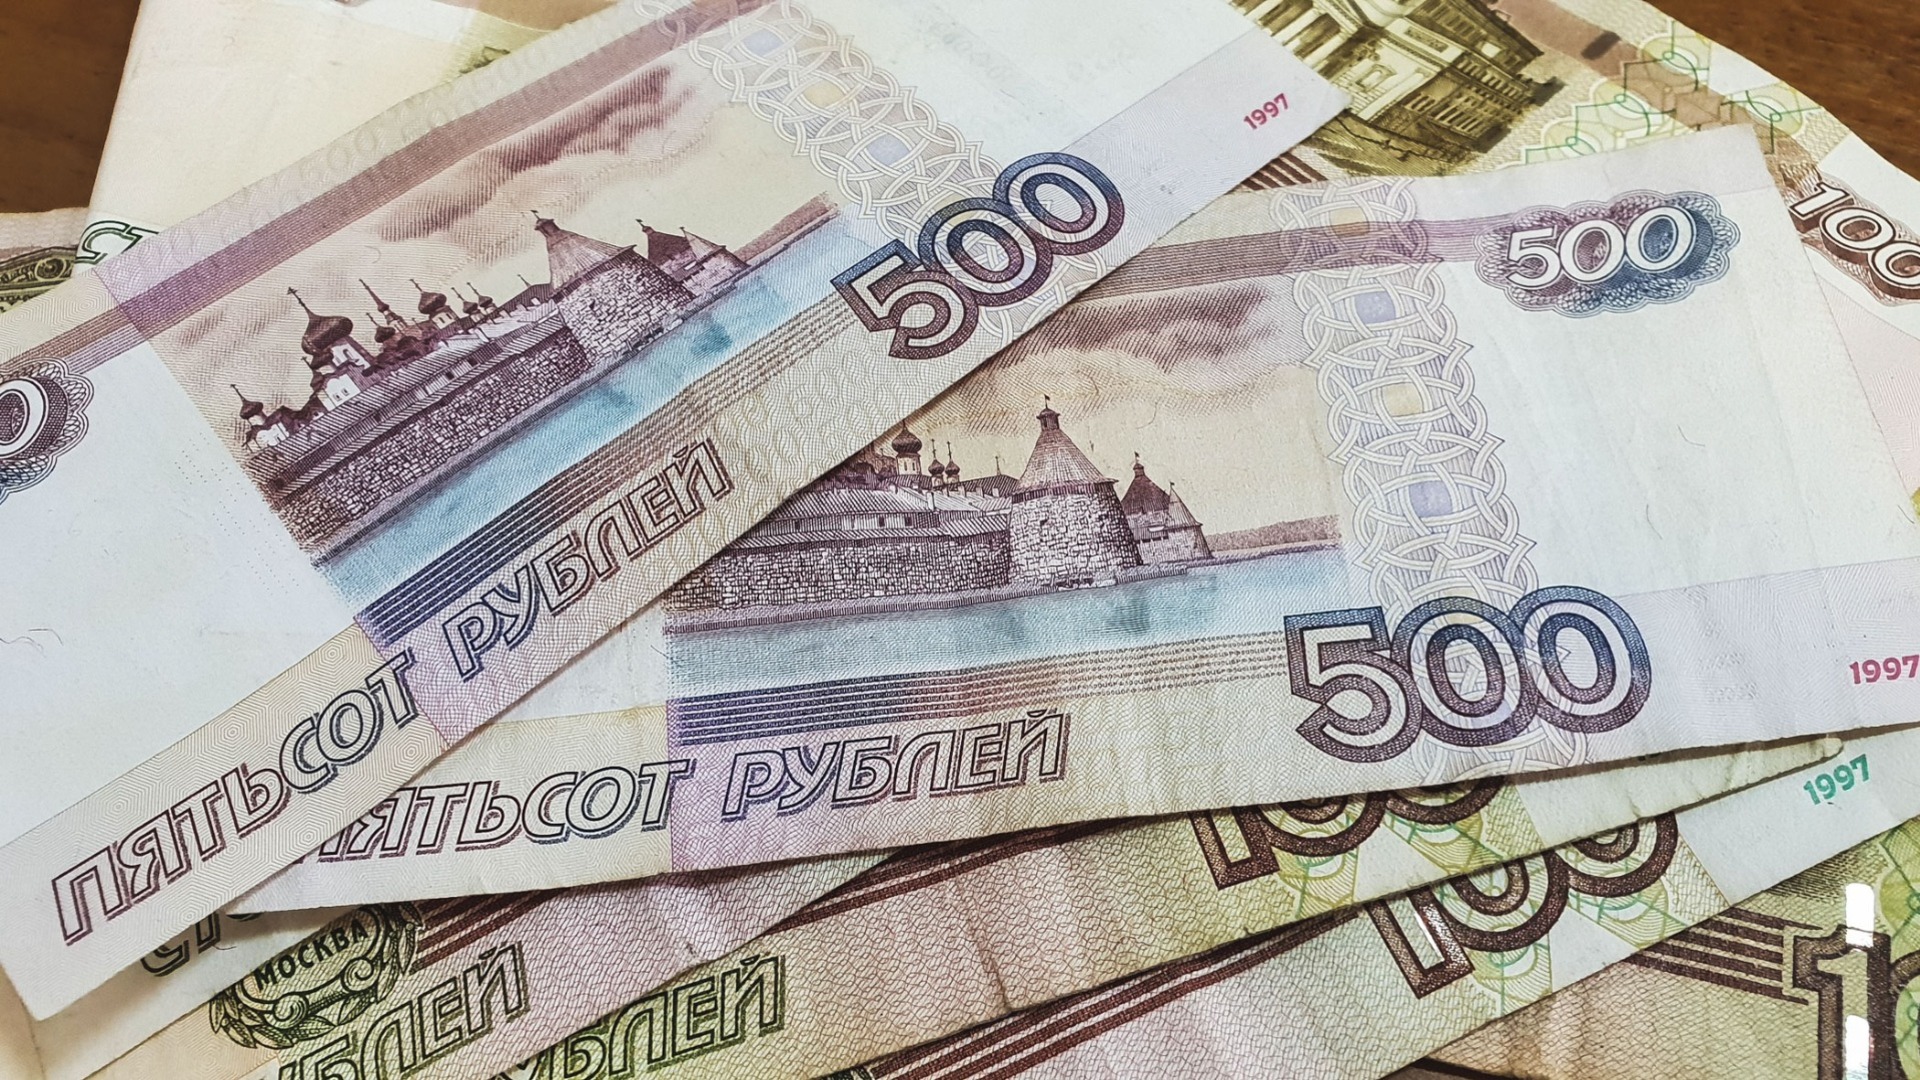 Минздрав задолжал фирме более 17 млн рублей по госконтракту